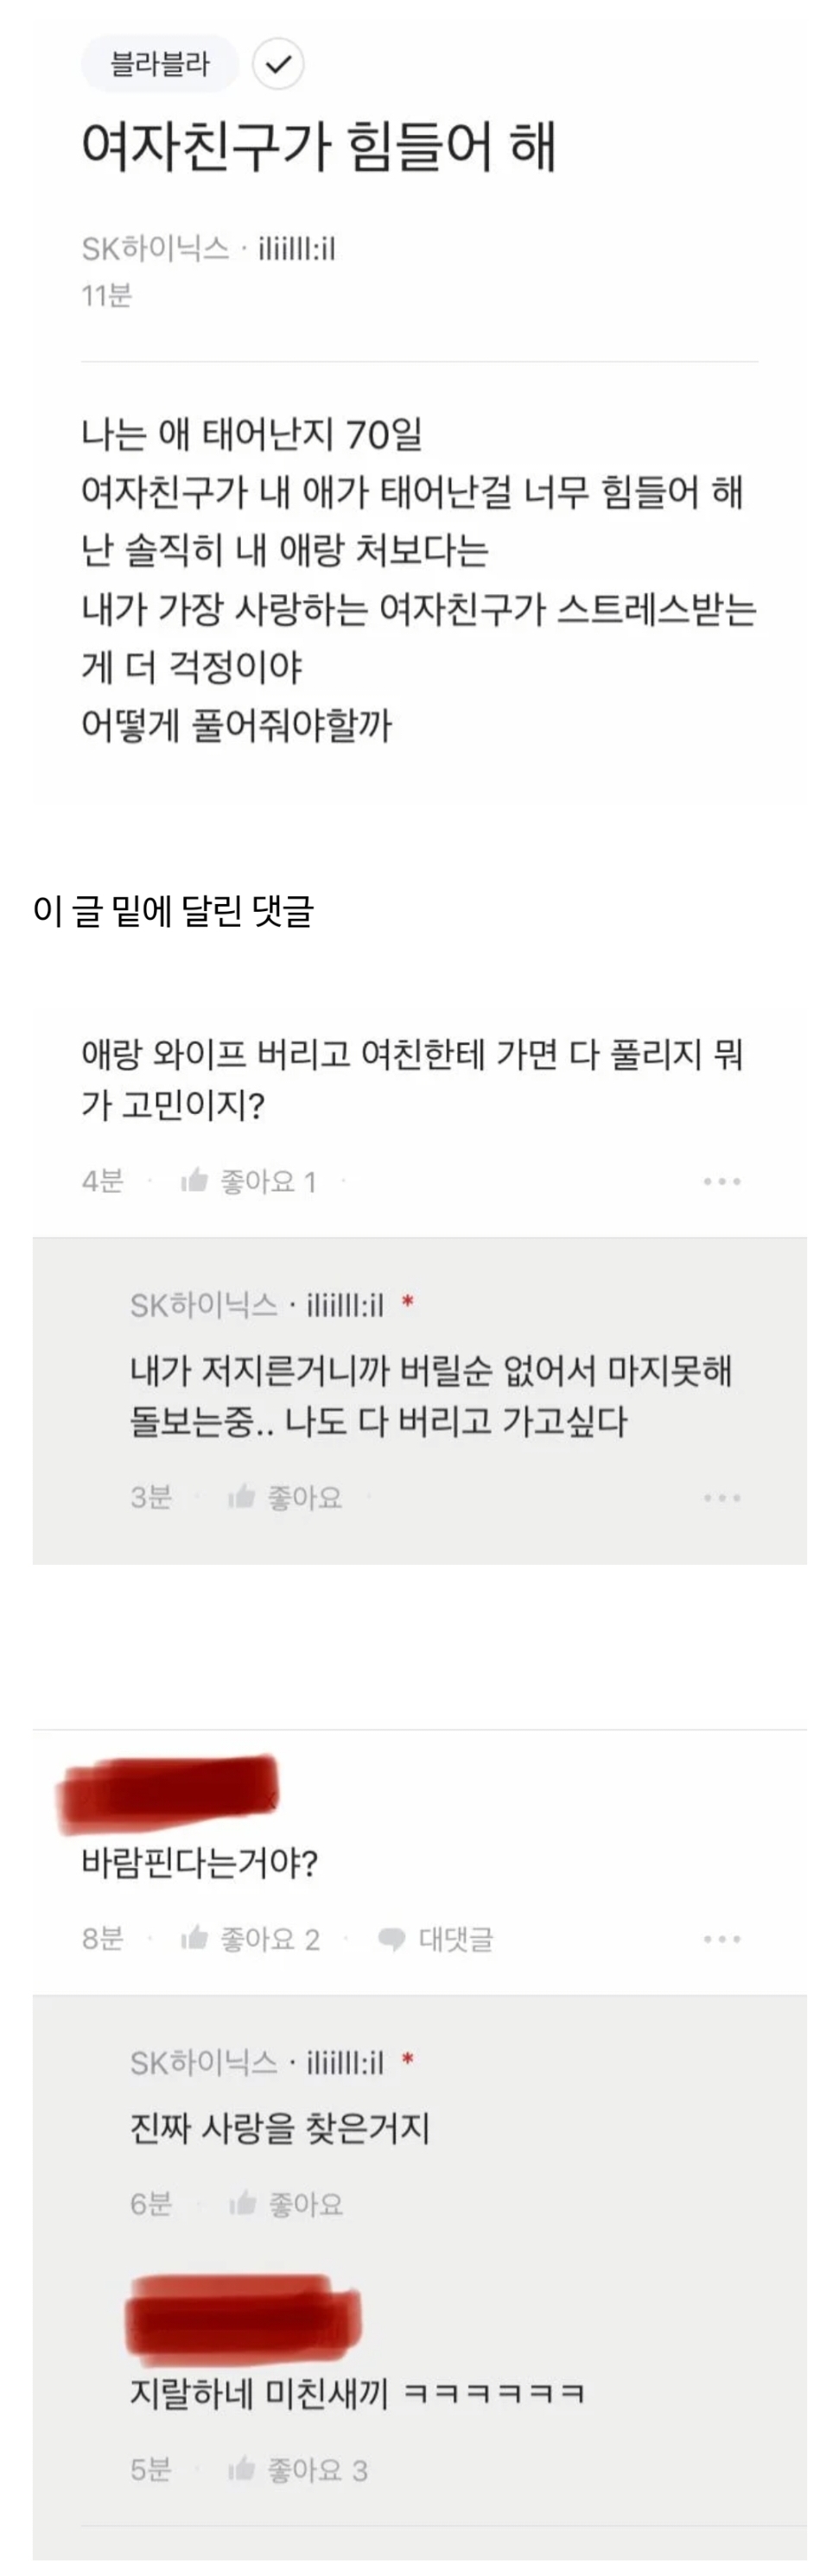 하이닉x 블라인드에 올라온 여자친구 고민..jpg